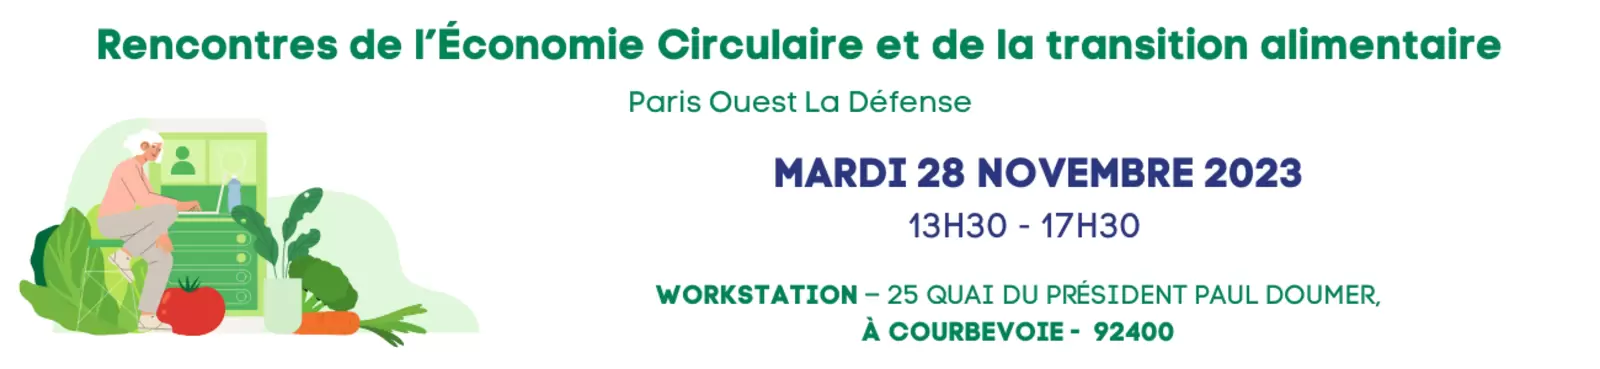 Rencontres de l'Économie Circulaire et de la transition alimentaire - Paris Ouest La Défense